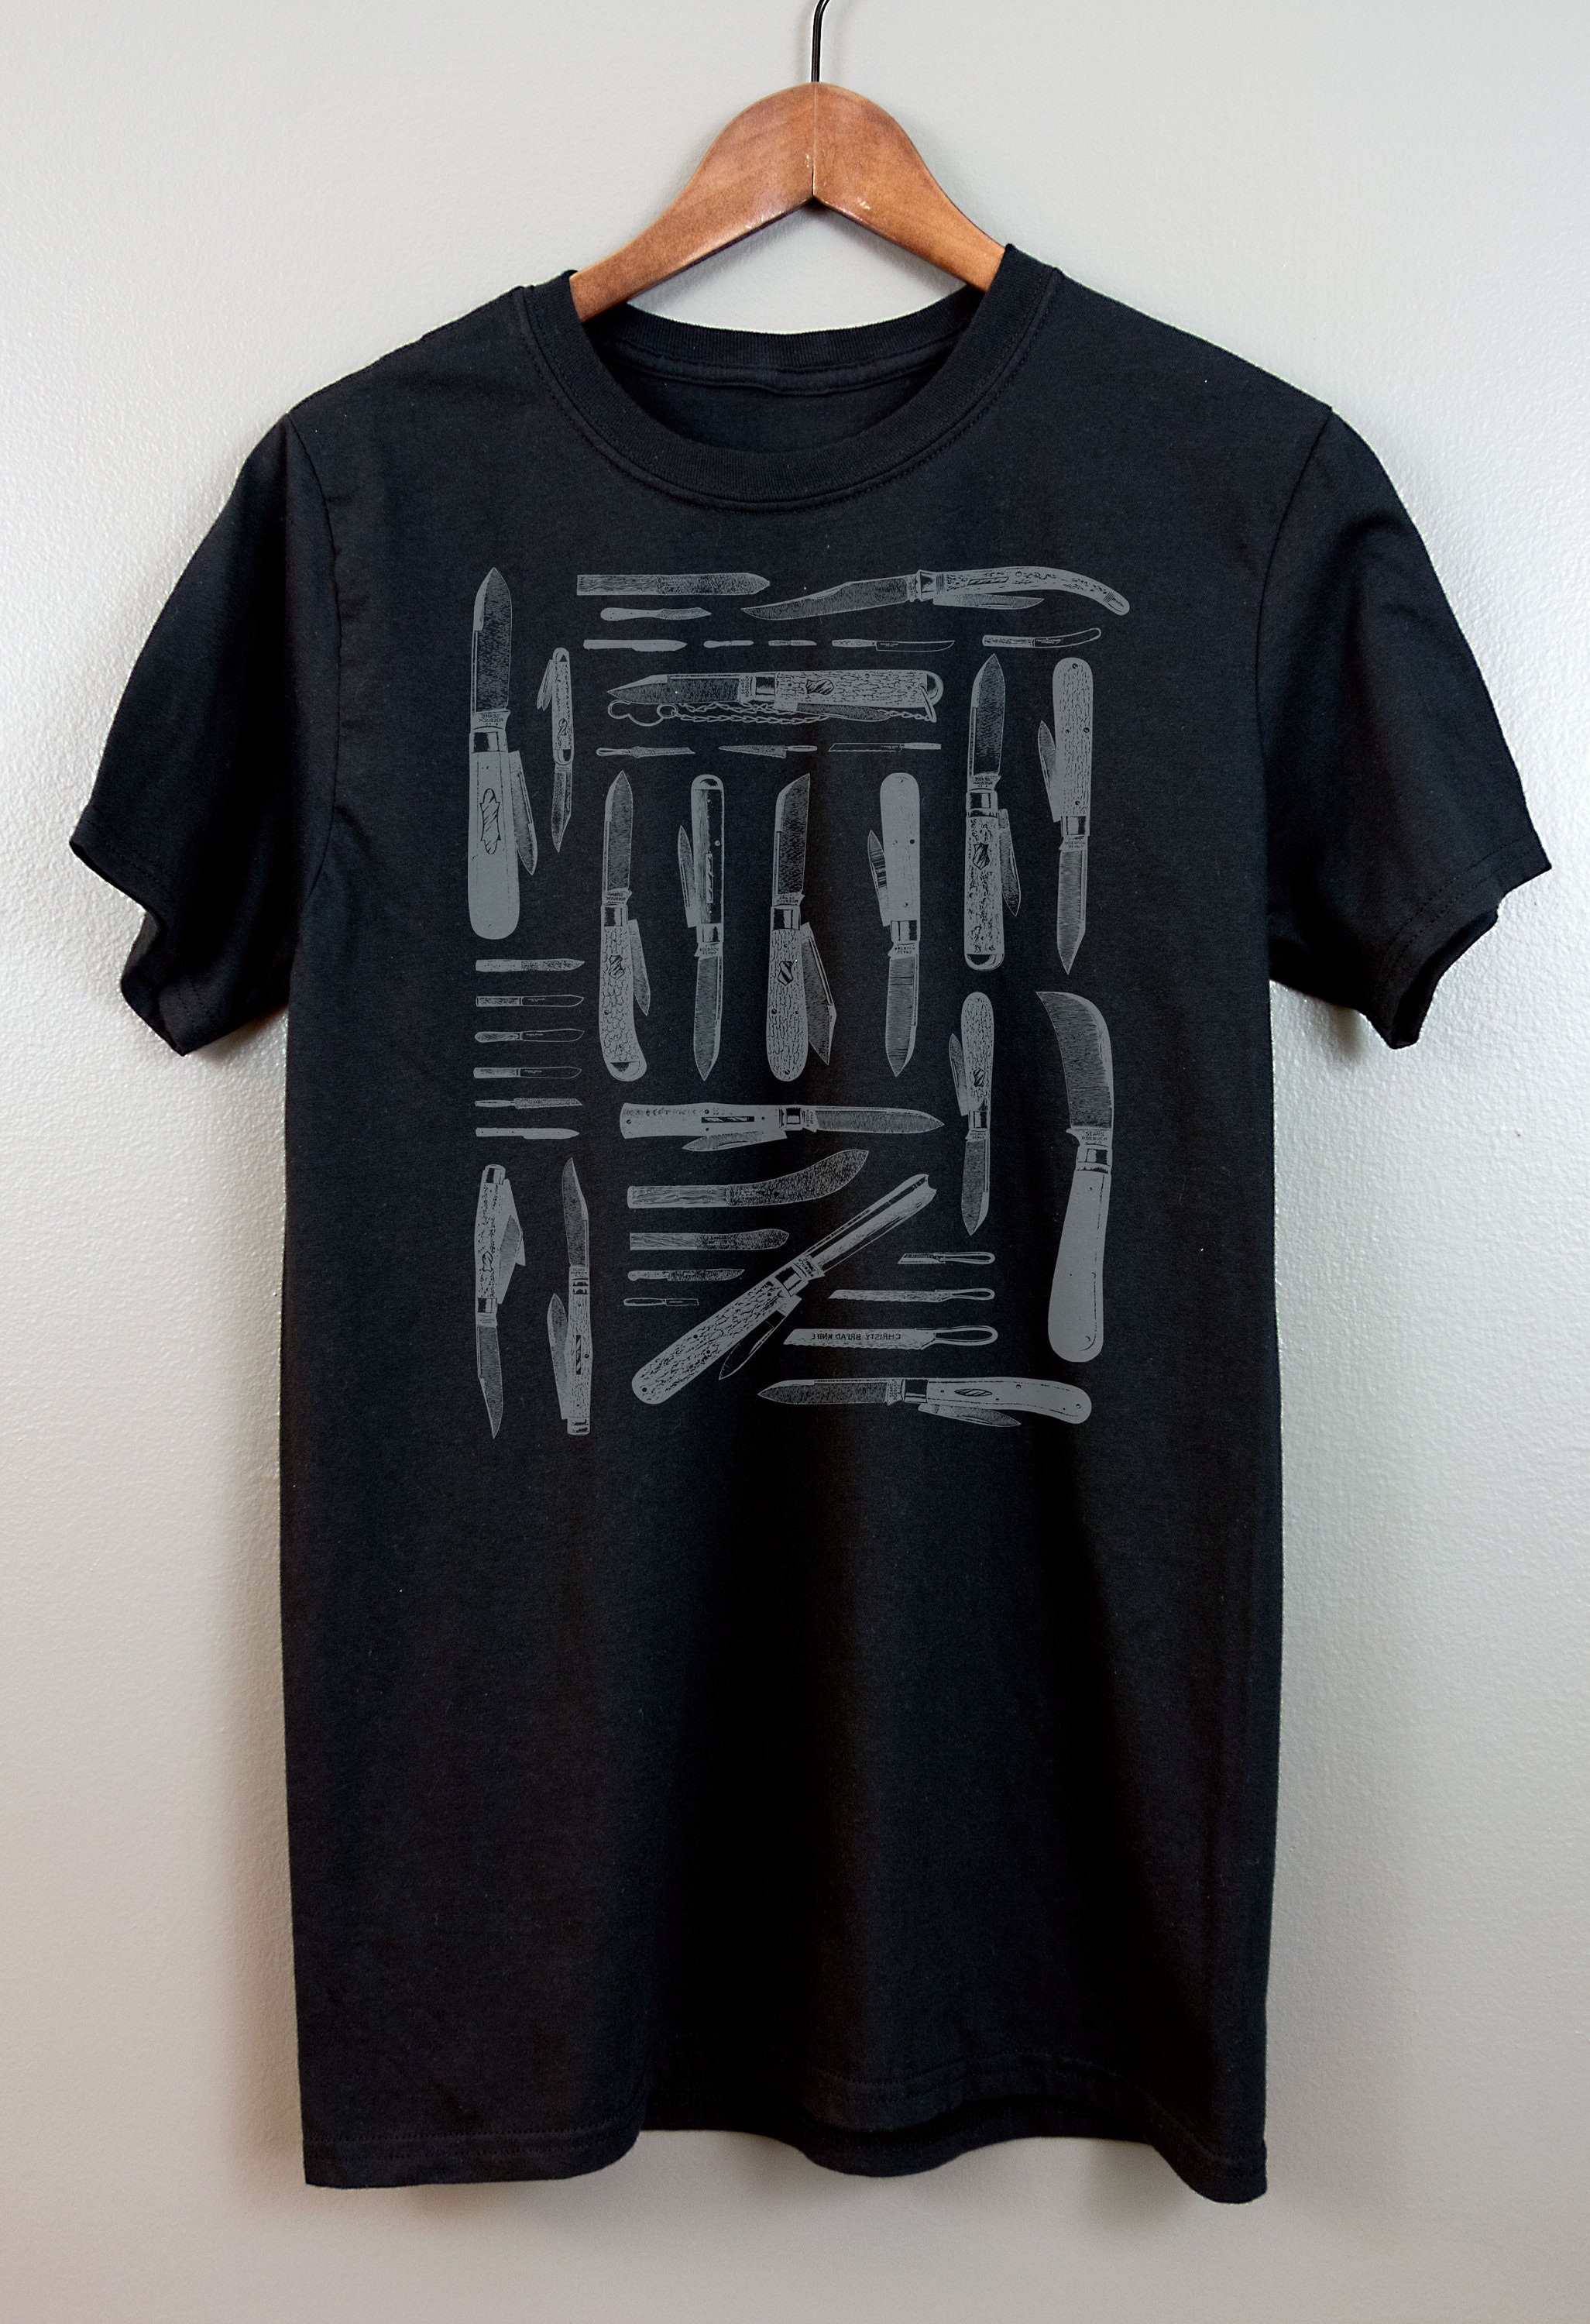 Nu goth Short-Sleeve T Shirt Tumblr Aesthetic Gothic Soft | Etsy